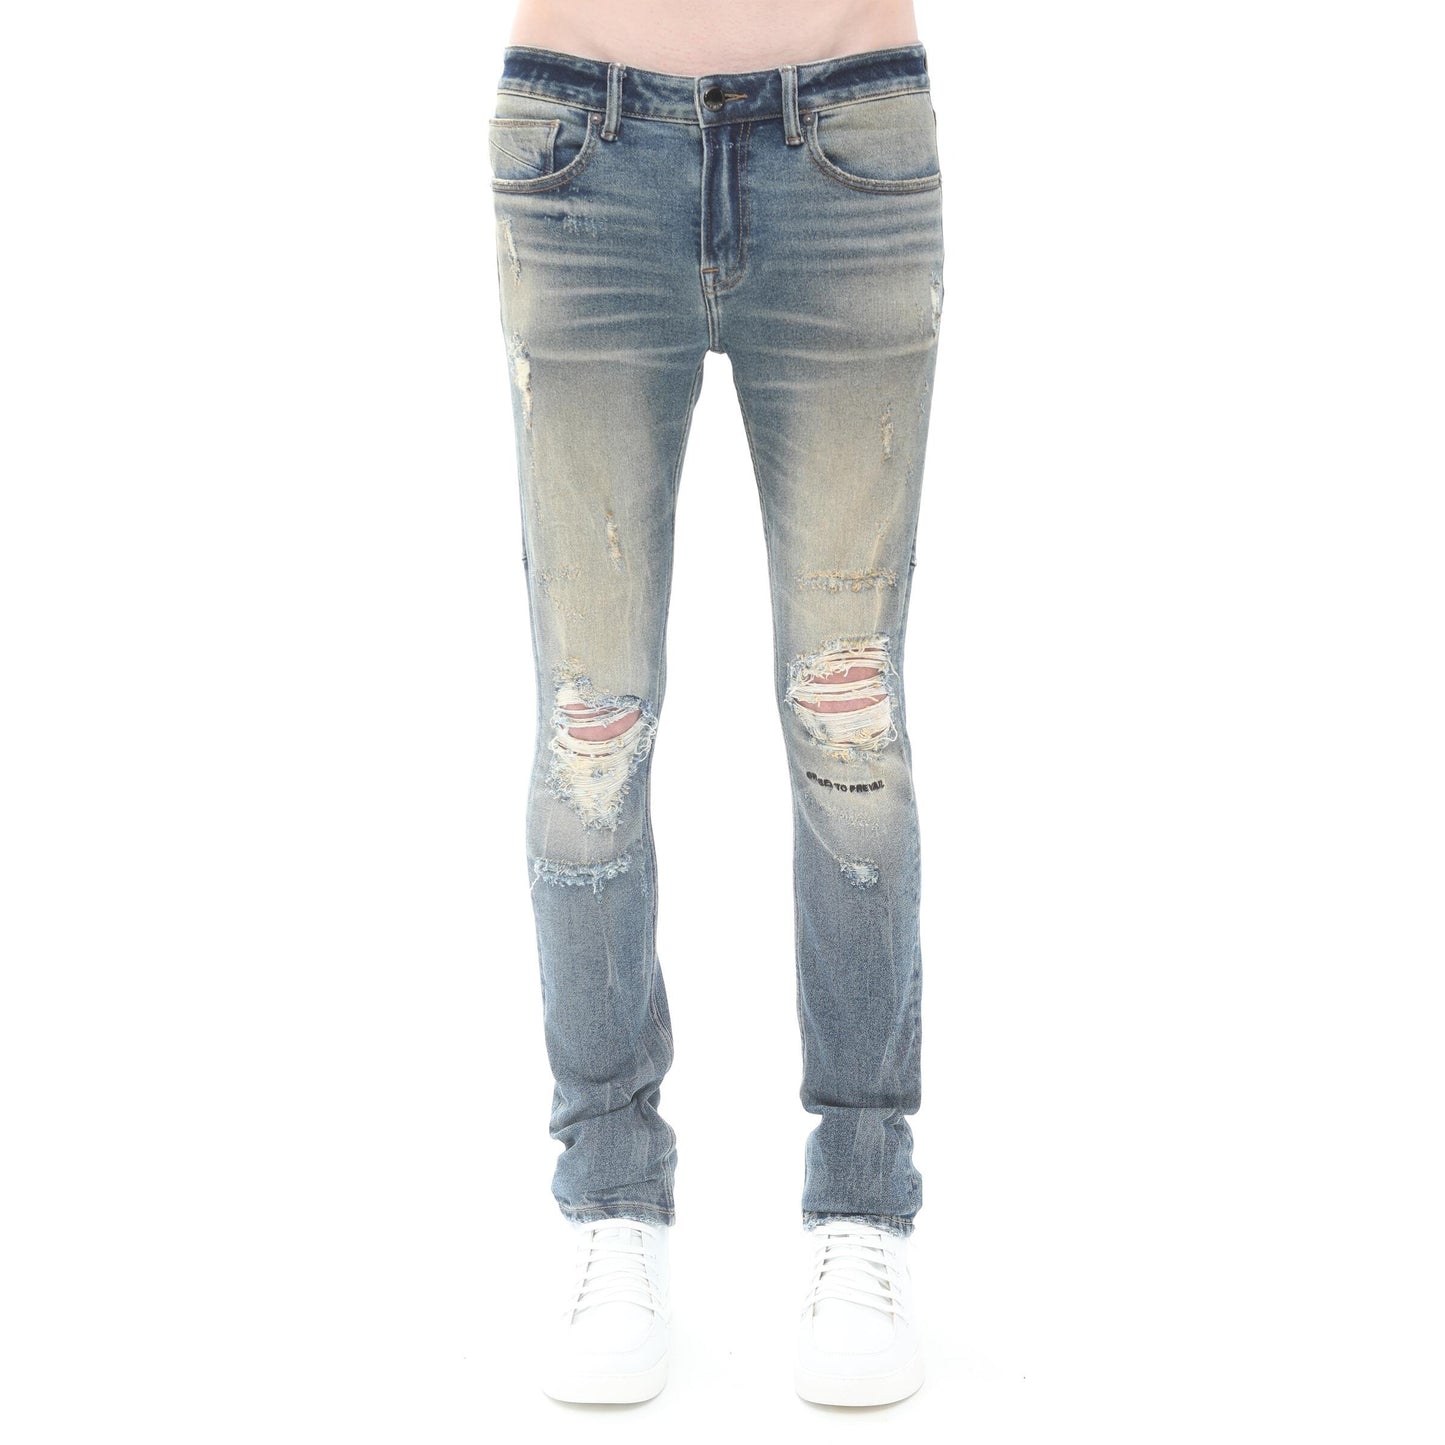 HVMAN Strat Skinny Jeans (Aspen) /C5